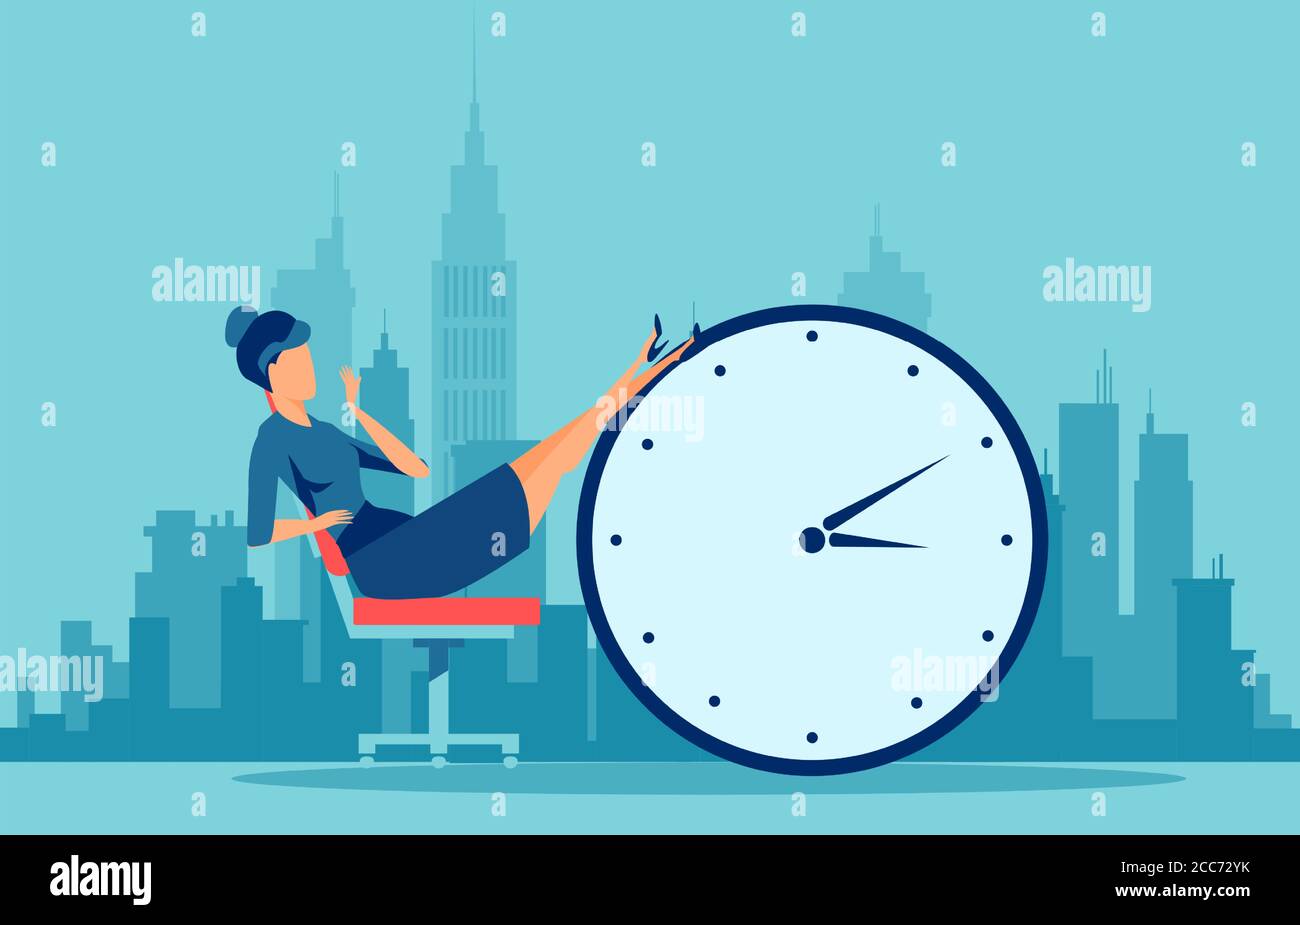 Vecteur d'une jeune femme d'affaires procrastinante assise dans le bureau avec ses jambes sur un réveil activé un fond urbain Illustration de Vecteur